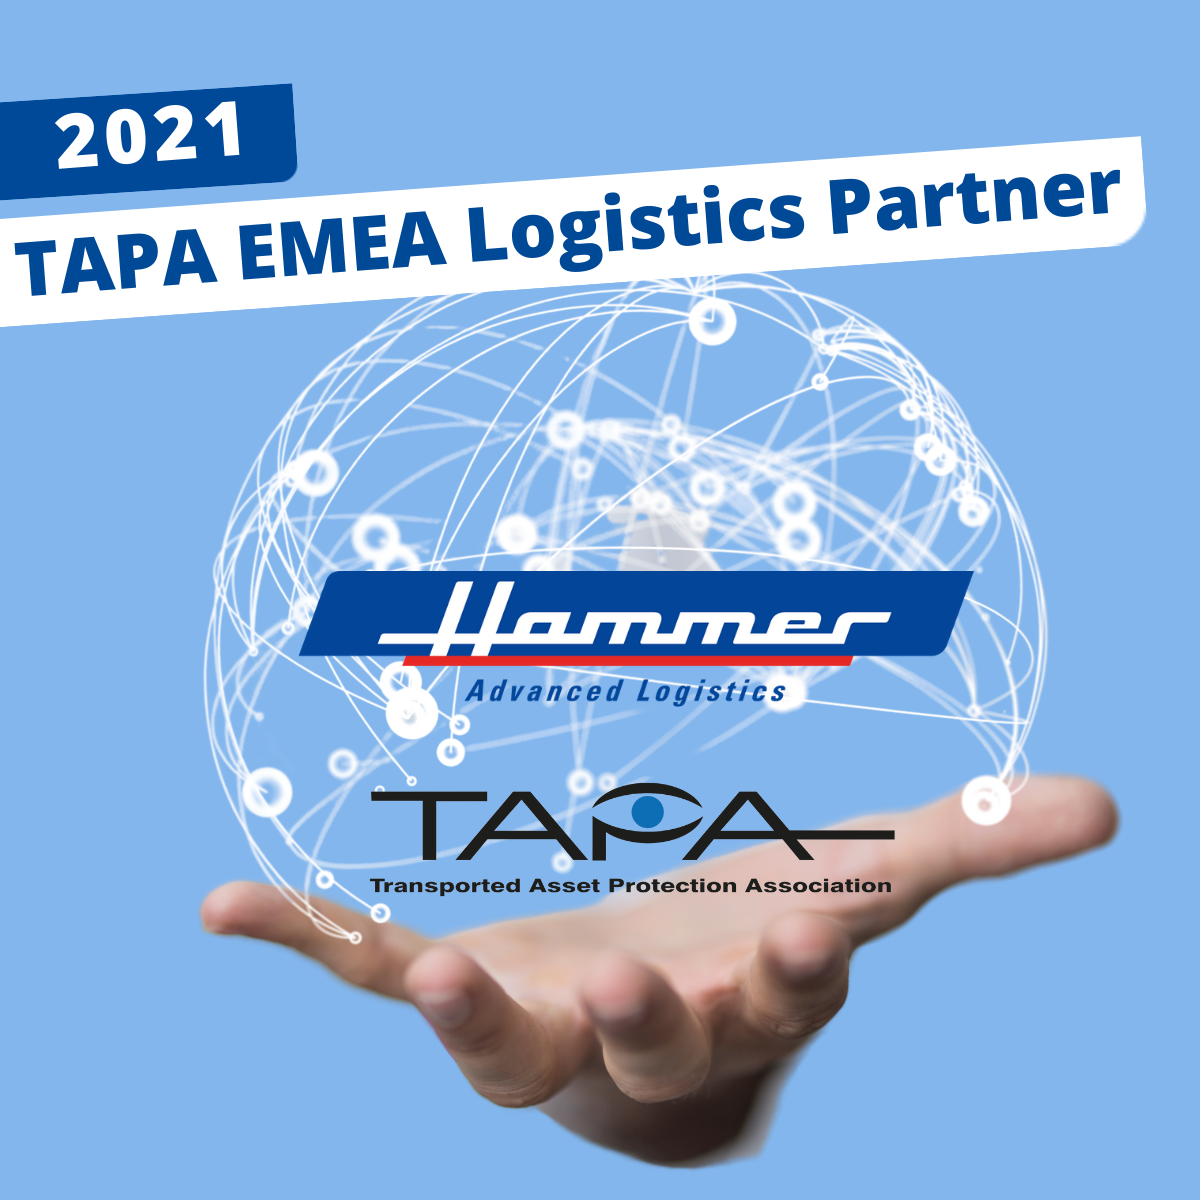  TAPA EMEA Logistik Partner 2021 